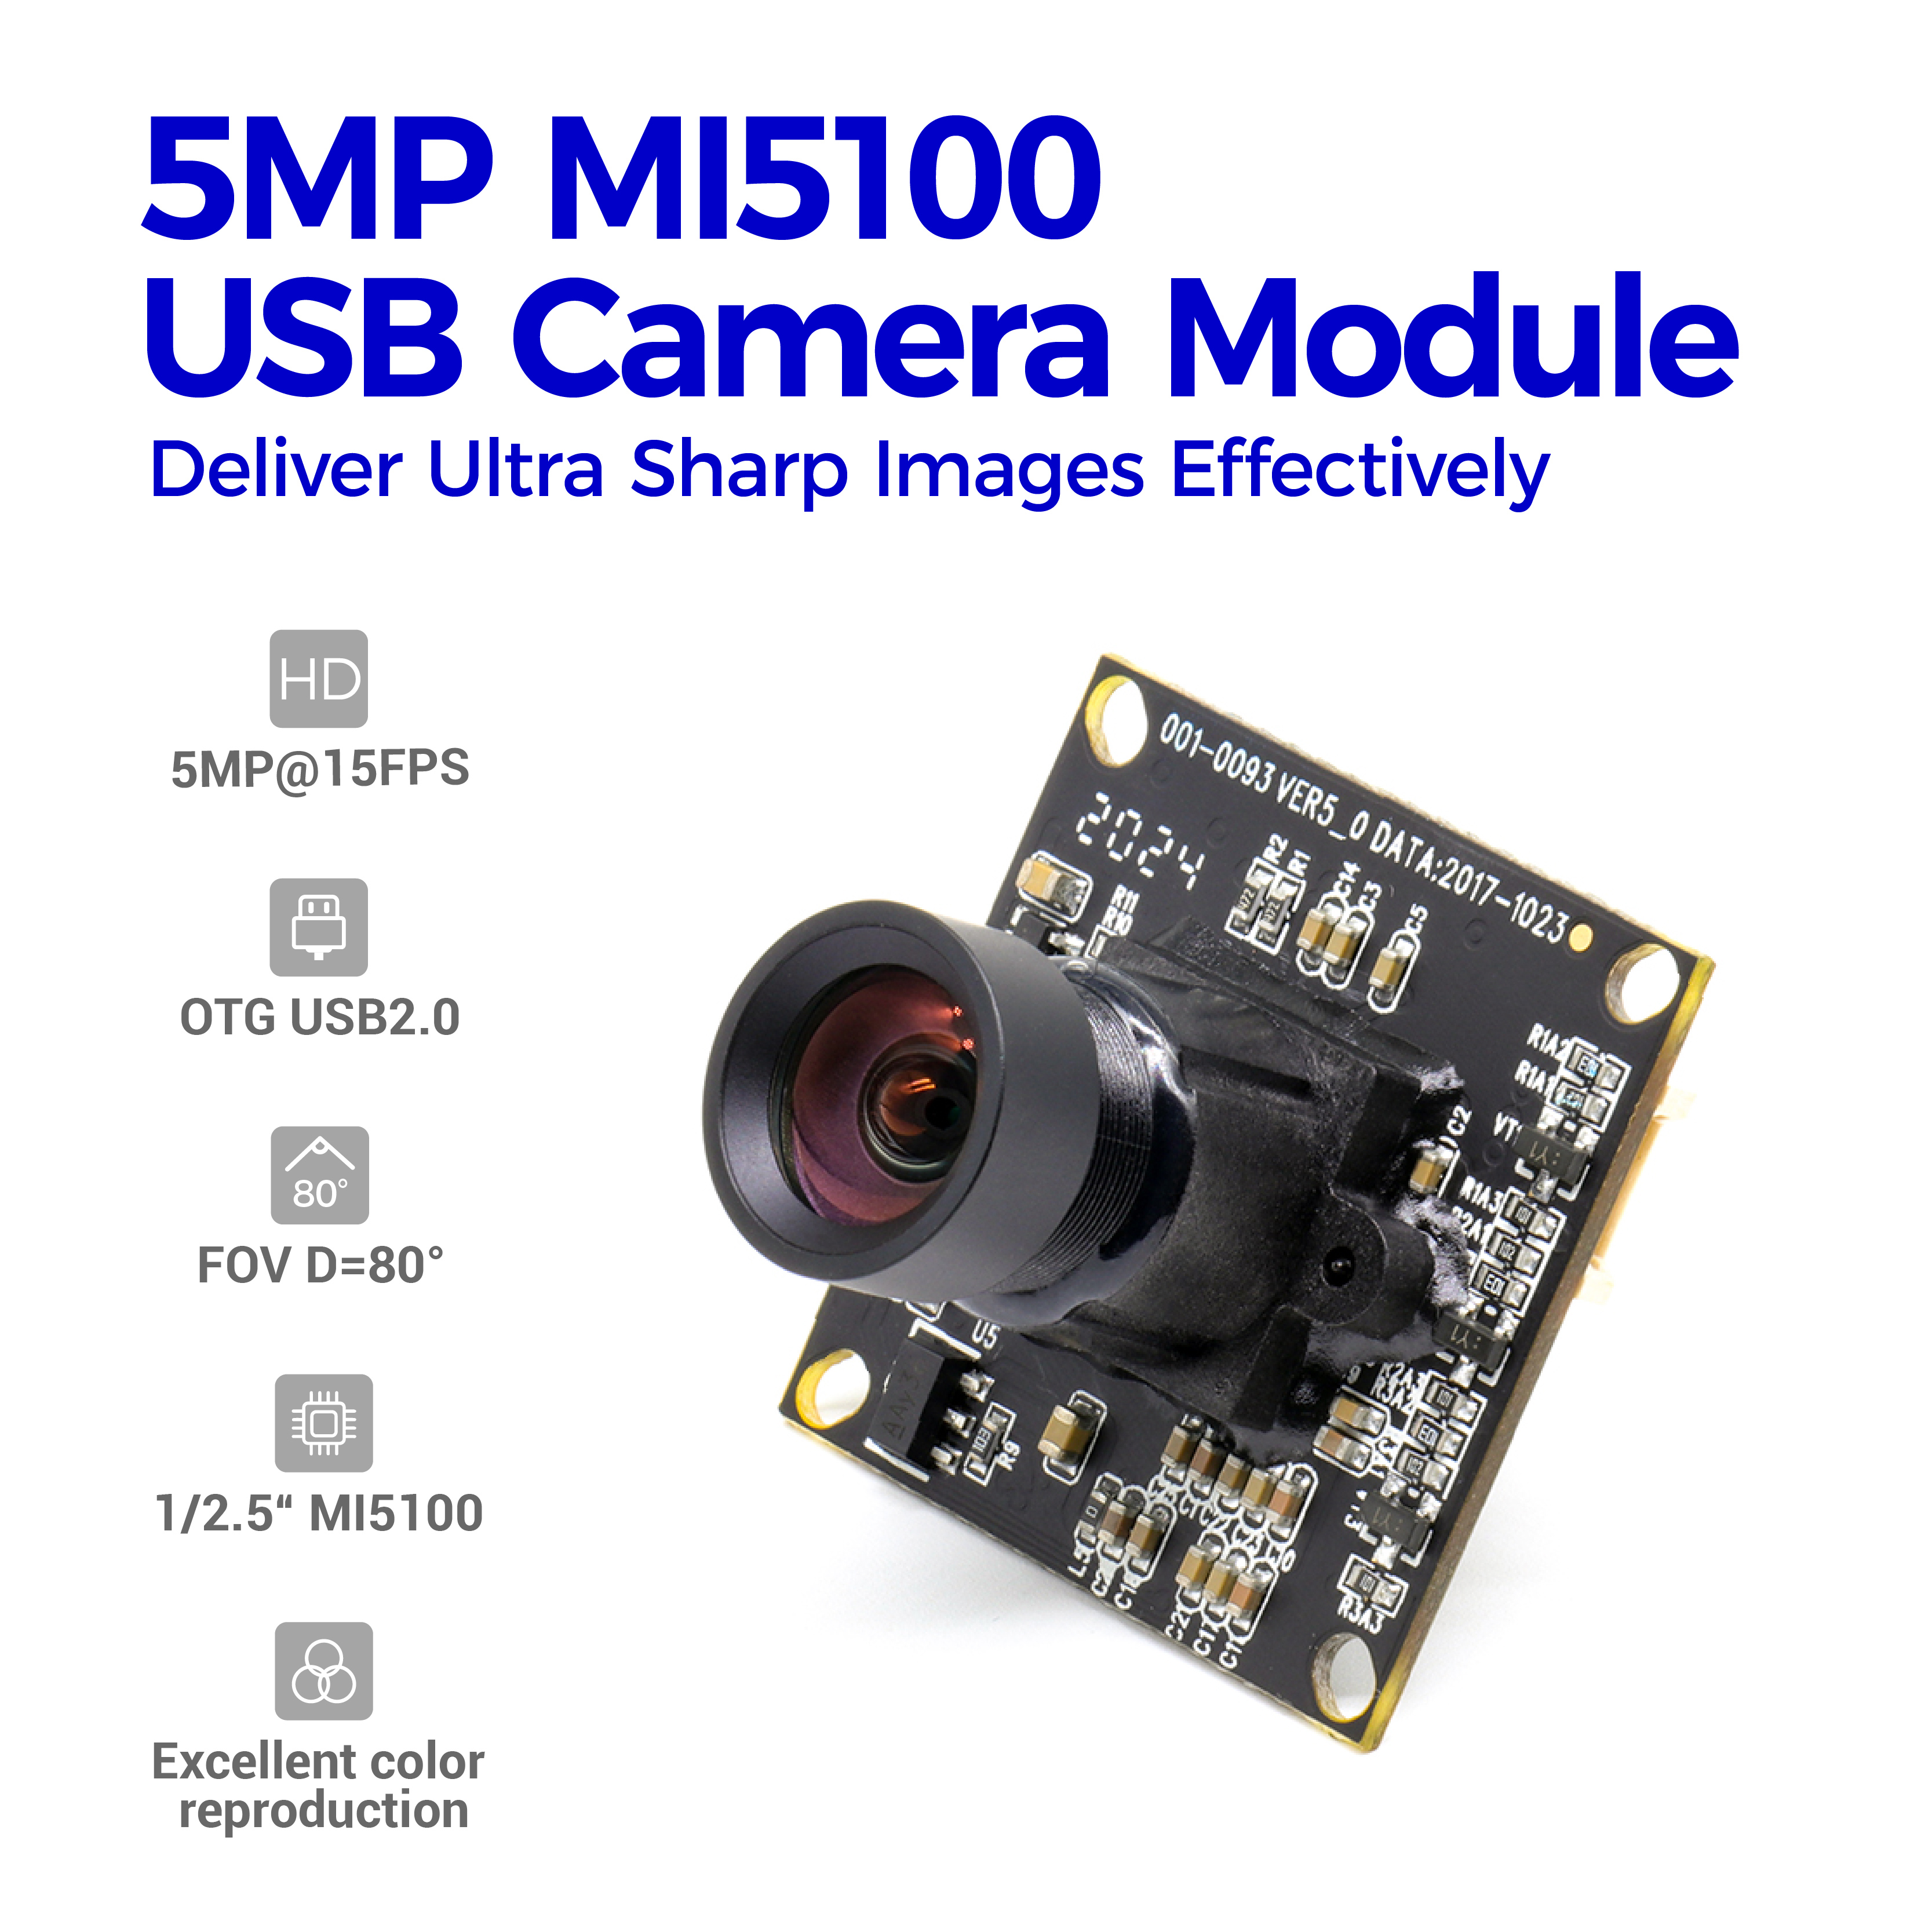 5MP USB Kamera Modulua Skin Detektagailurako Irudi aipagarria